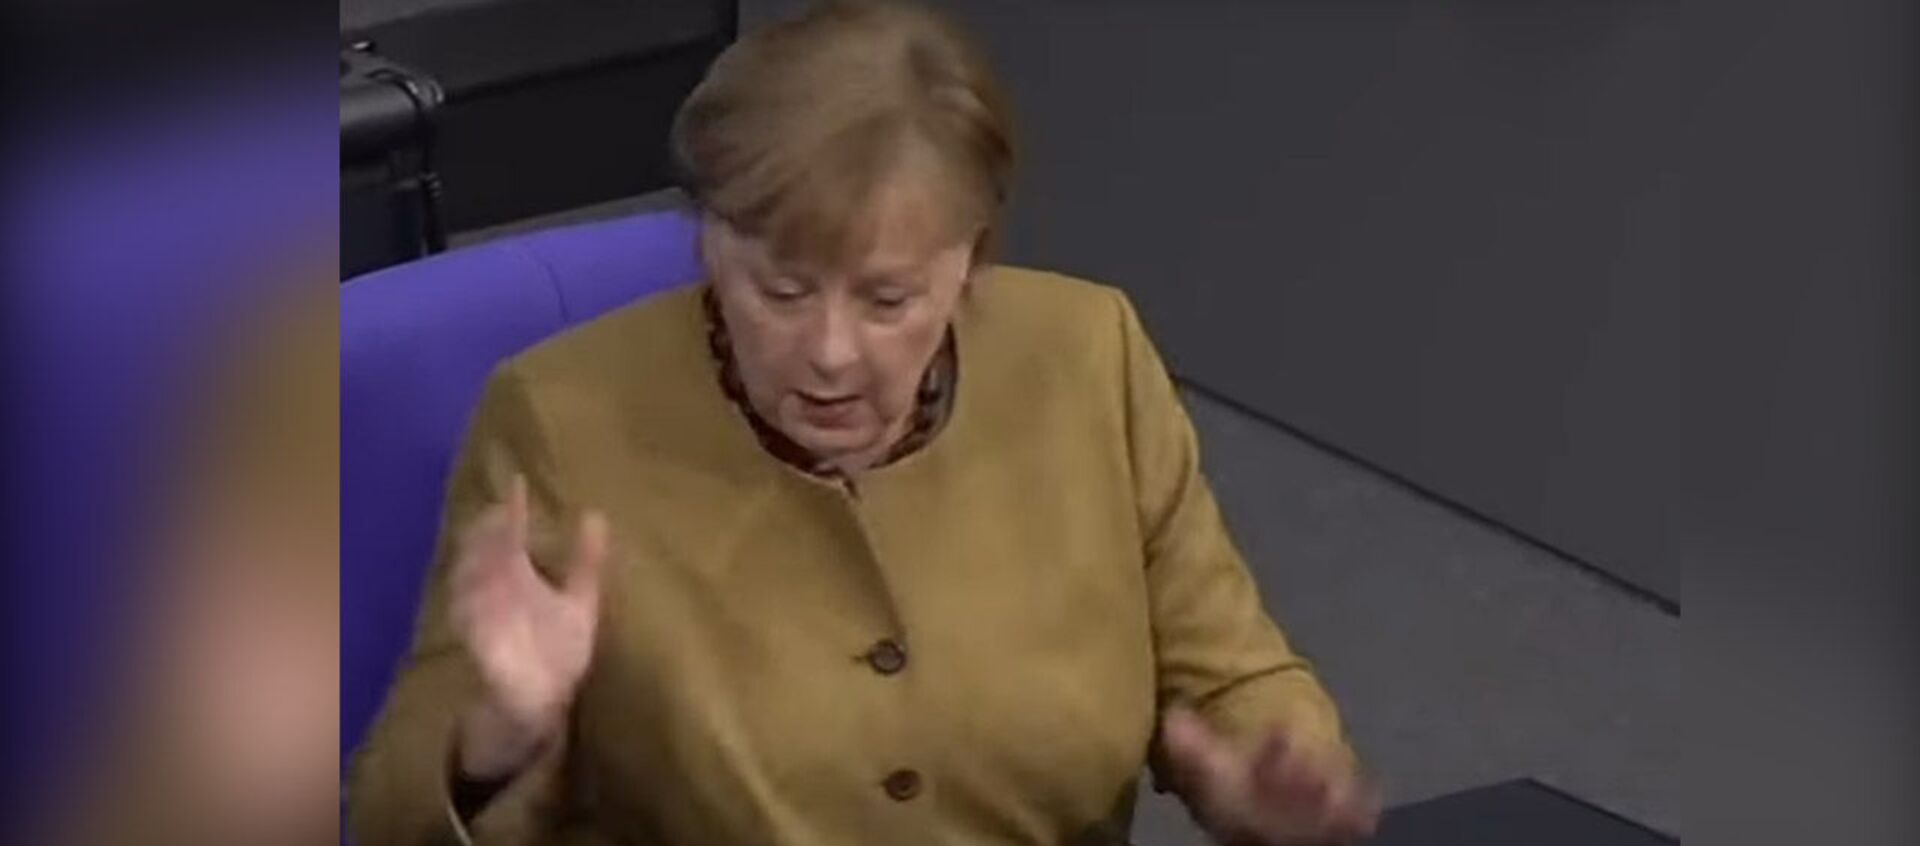 Меркель забыла маску на трибуне — видео ее реакции набрало 3 млн просмотров - Sputnik Кыргызстан, 1920, 19.02.2021